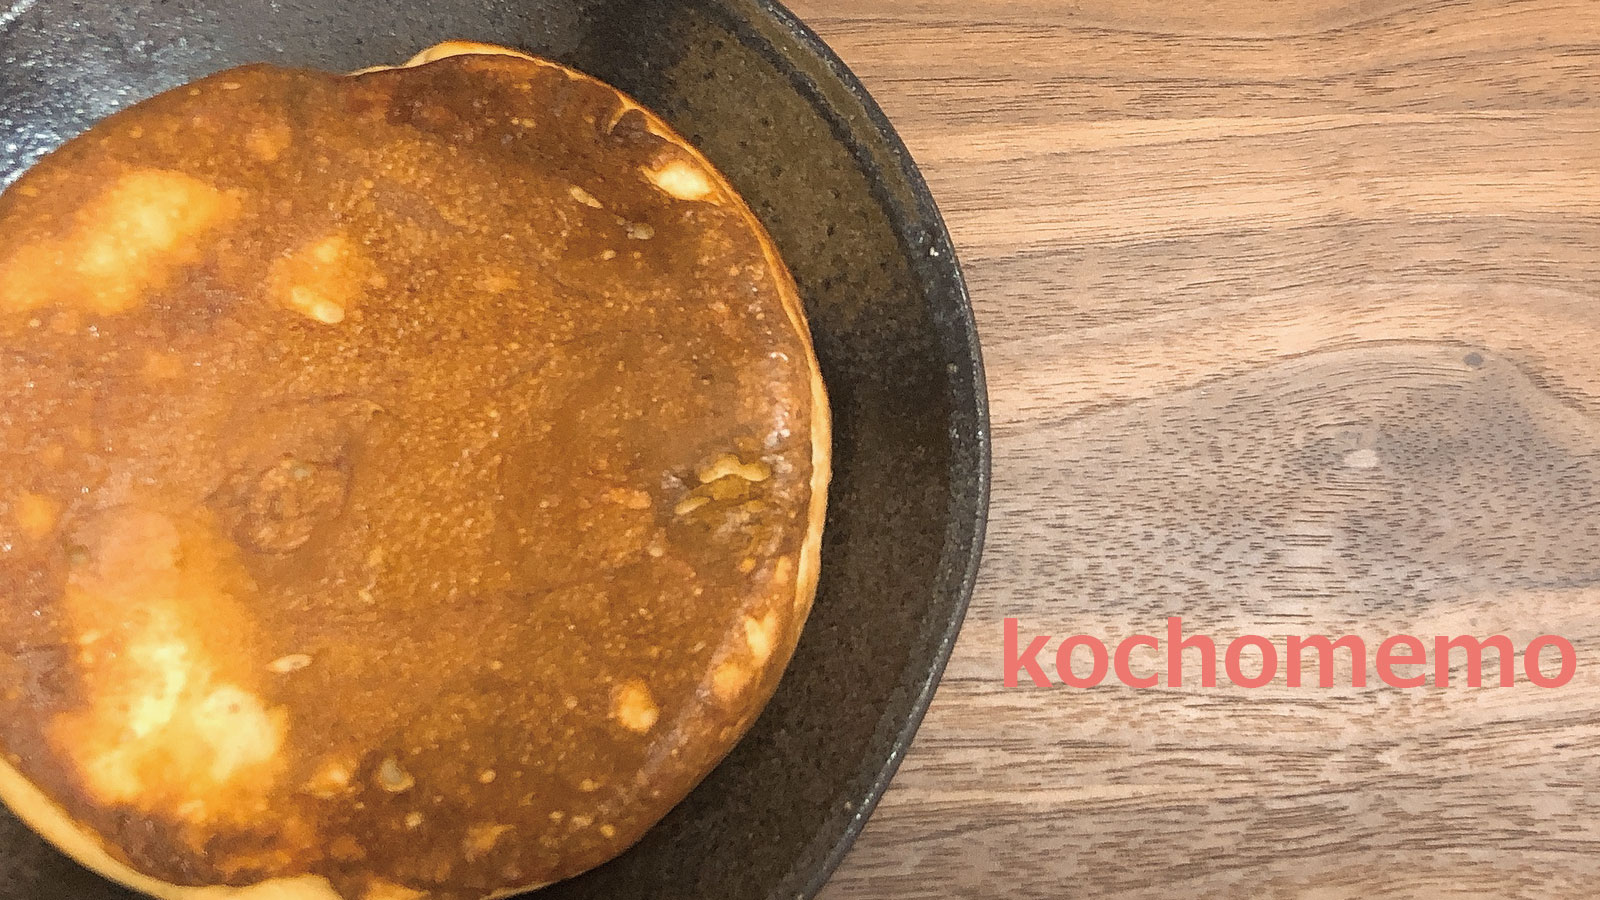 簡単 糖質制限レシピ 14cmヘルシーパンケーキの作り方 低糖質お菓子用ミックス使用 Kochomemo